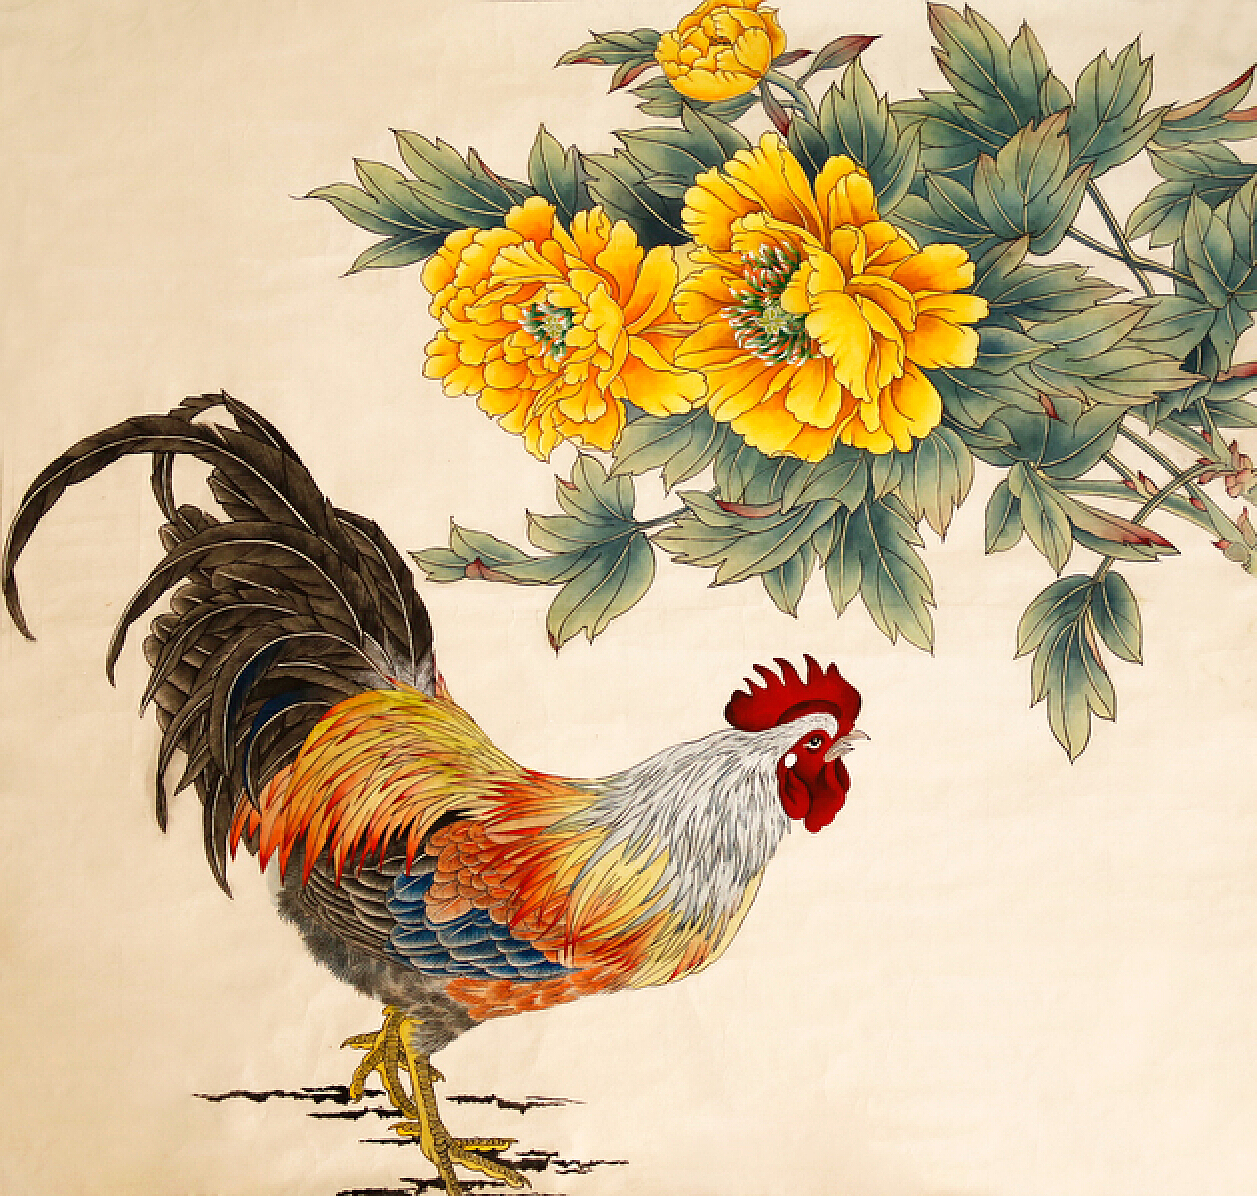 彩色打鸣的大公鸡简笔画画法图片步骤💛巧艺网